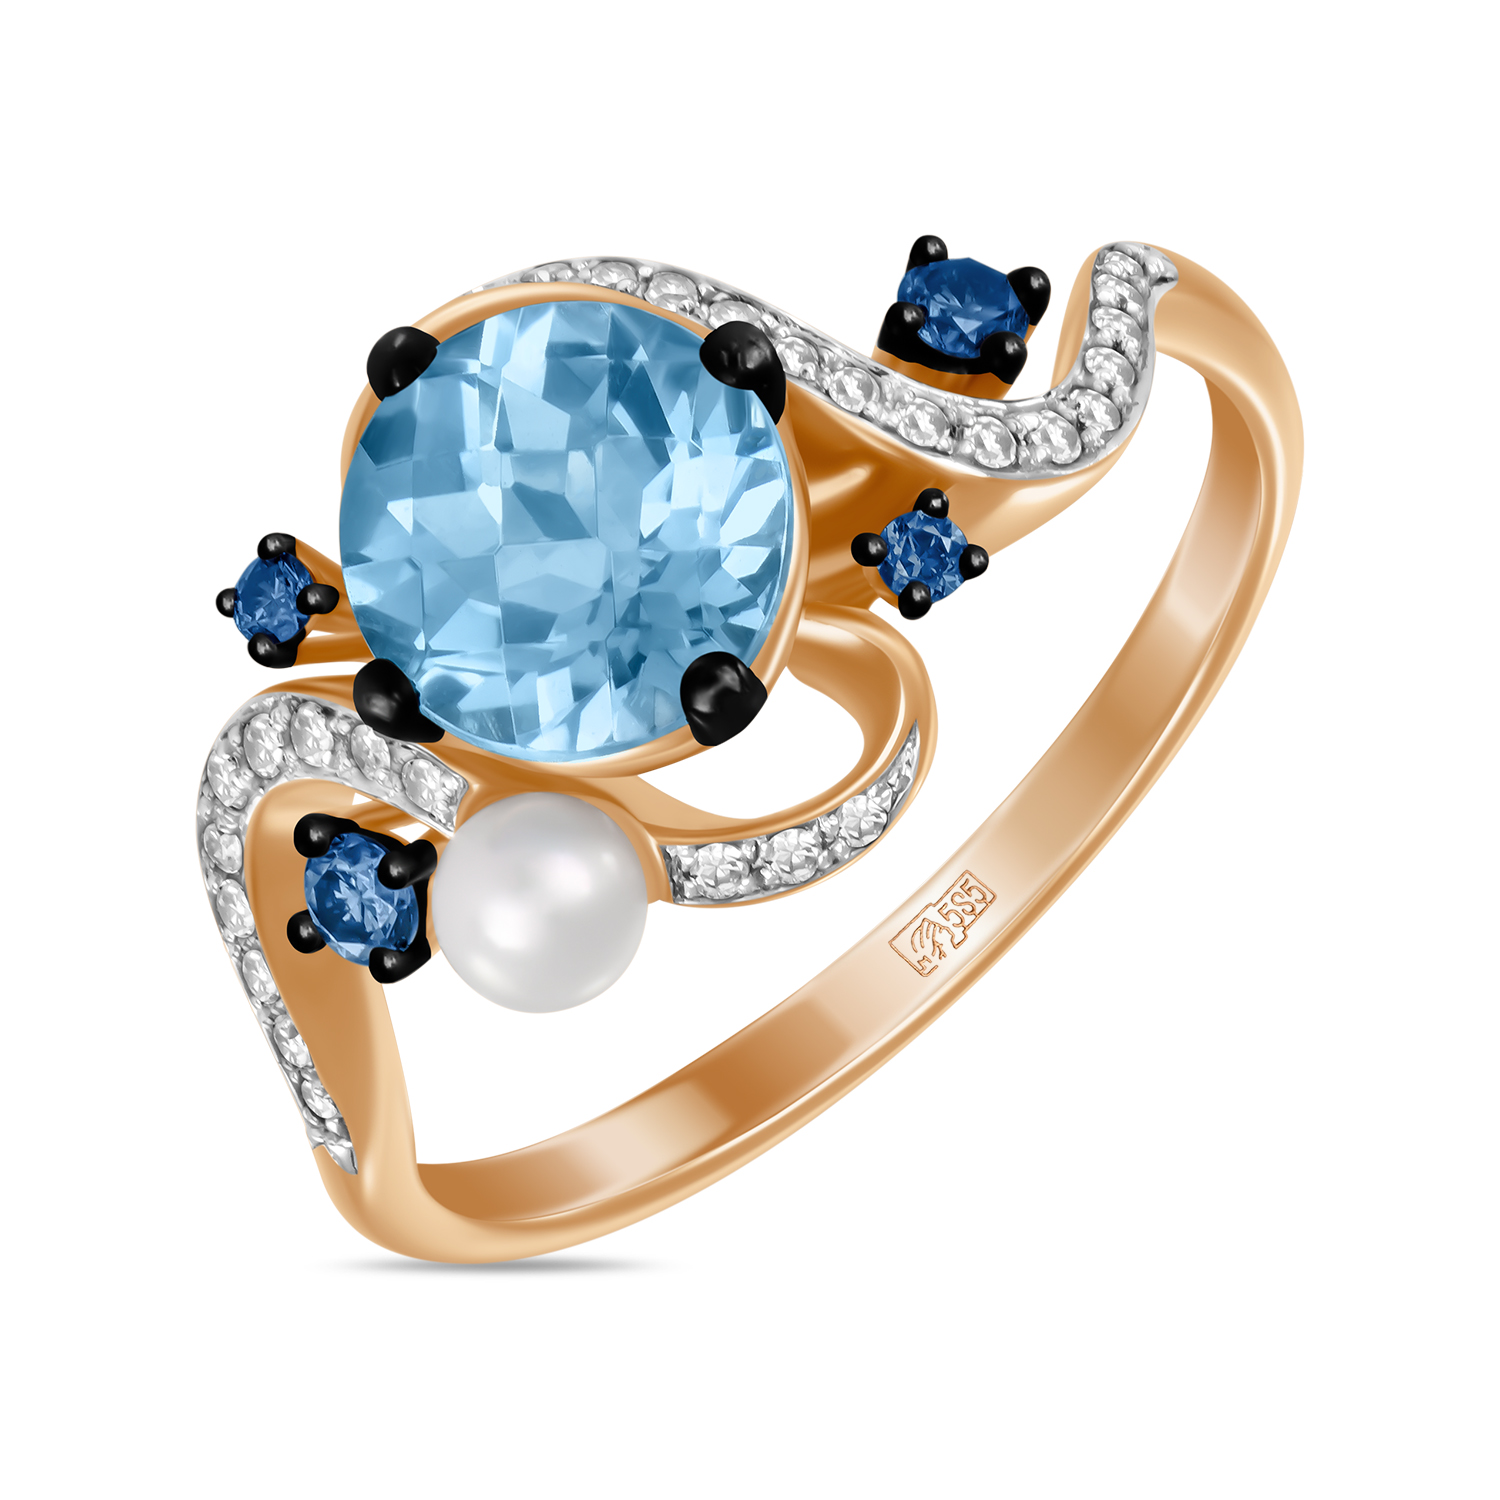 Кольца МЮЗ Золотое кольцо с топазом, бриллиантами, цветными бриллиантами и жемчугом кольца мюз золотое кольцо с аметистом топазом цитрином бриллиантами и цветными бриллиантами